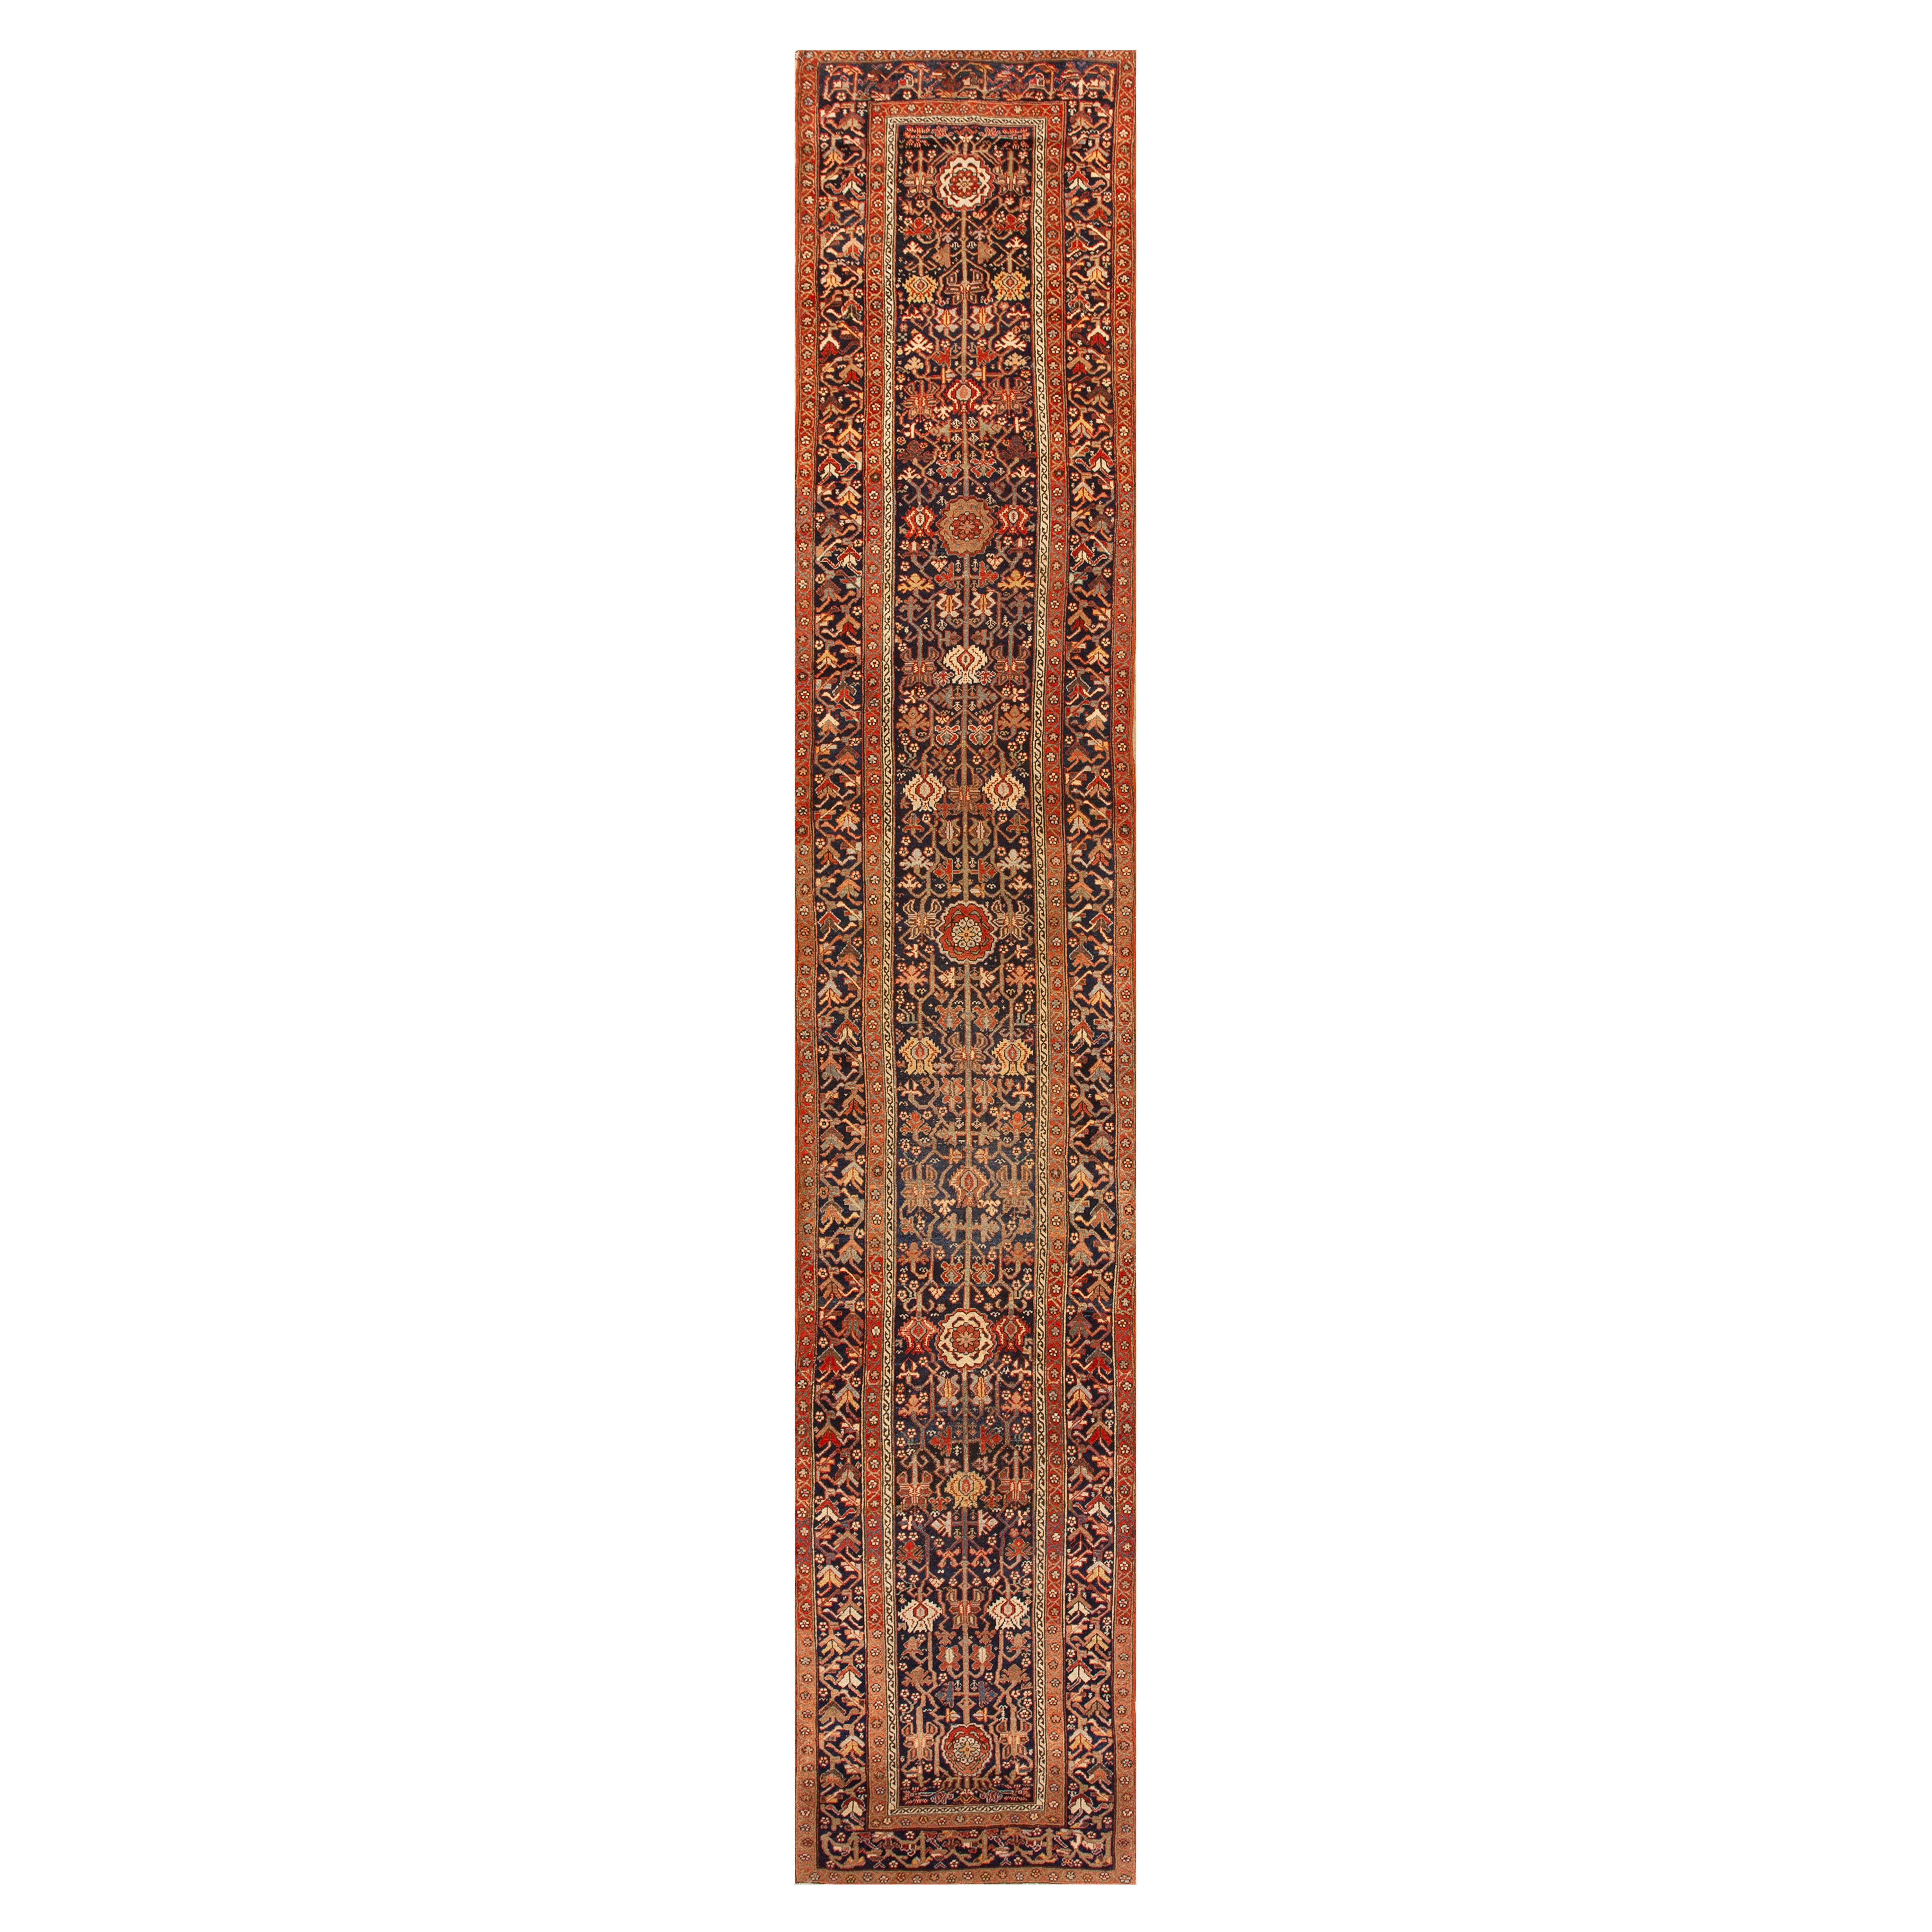 1840s Persian Rugs